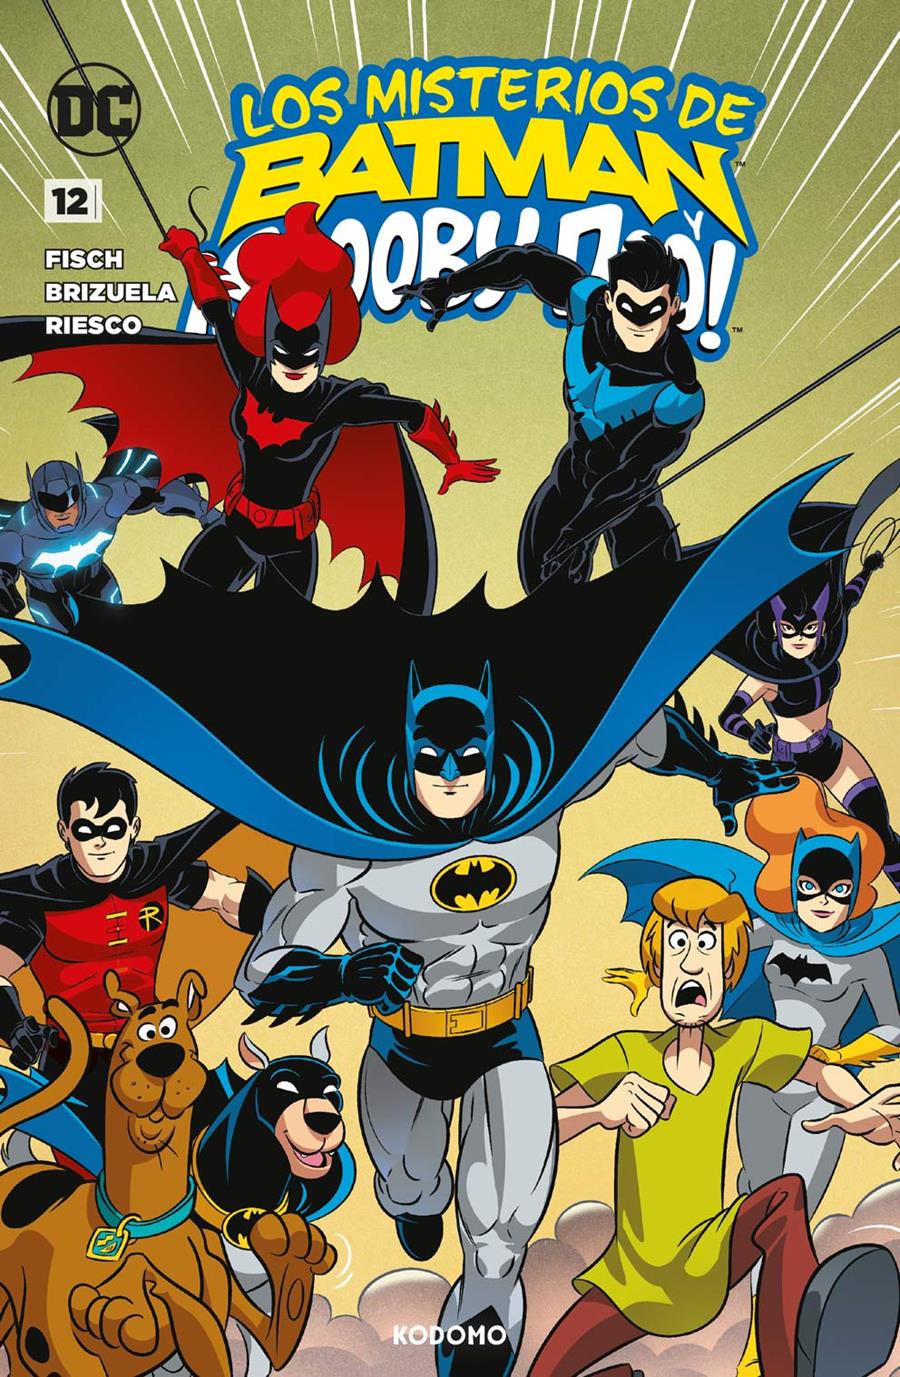 Los misterios de Batman y ¡Scooby-Doo! núm. 12 | N1223-ECC33 | Sholly Fisch, Darío Brizuela | Terra de Còmic - Tu tienda de cómics online especializada en cómics, manga y merchandising